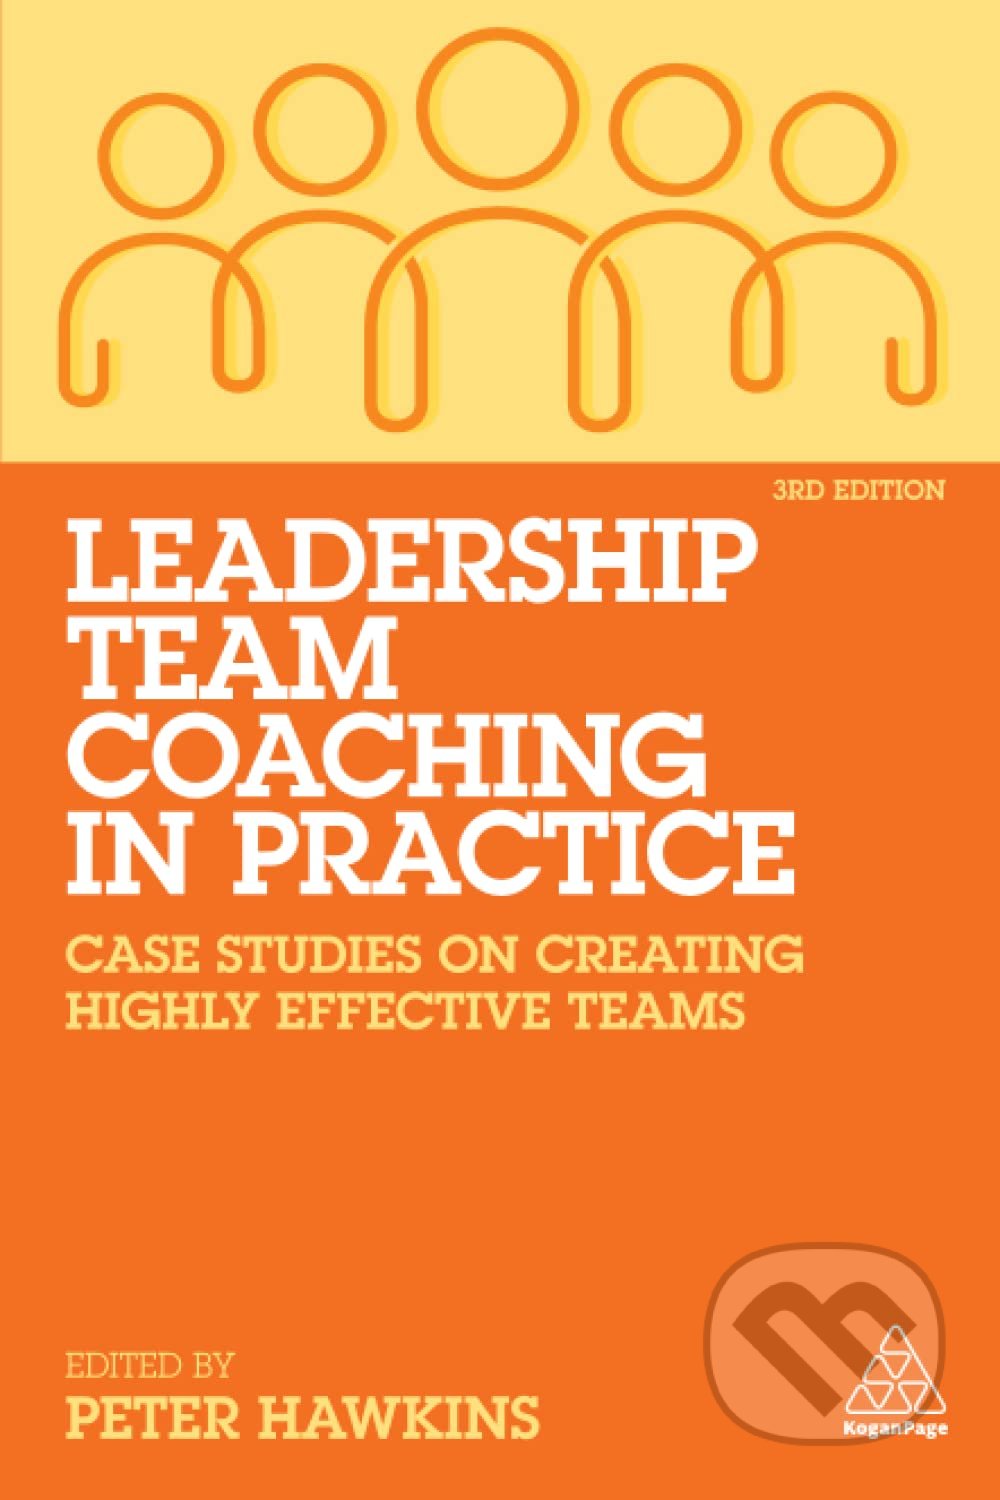 Leadership Team Coaching in Practice - Peter Hawkins, Kogan Page, 2022